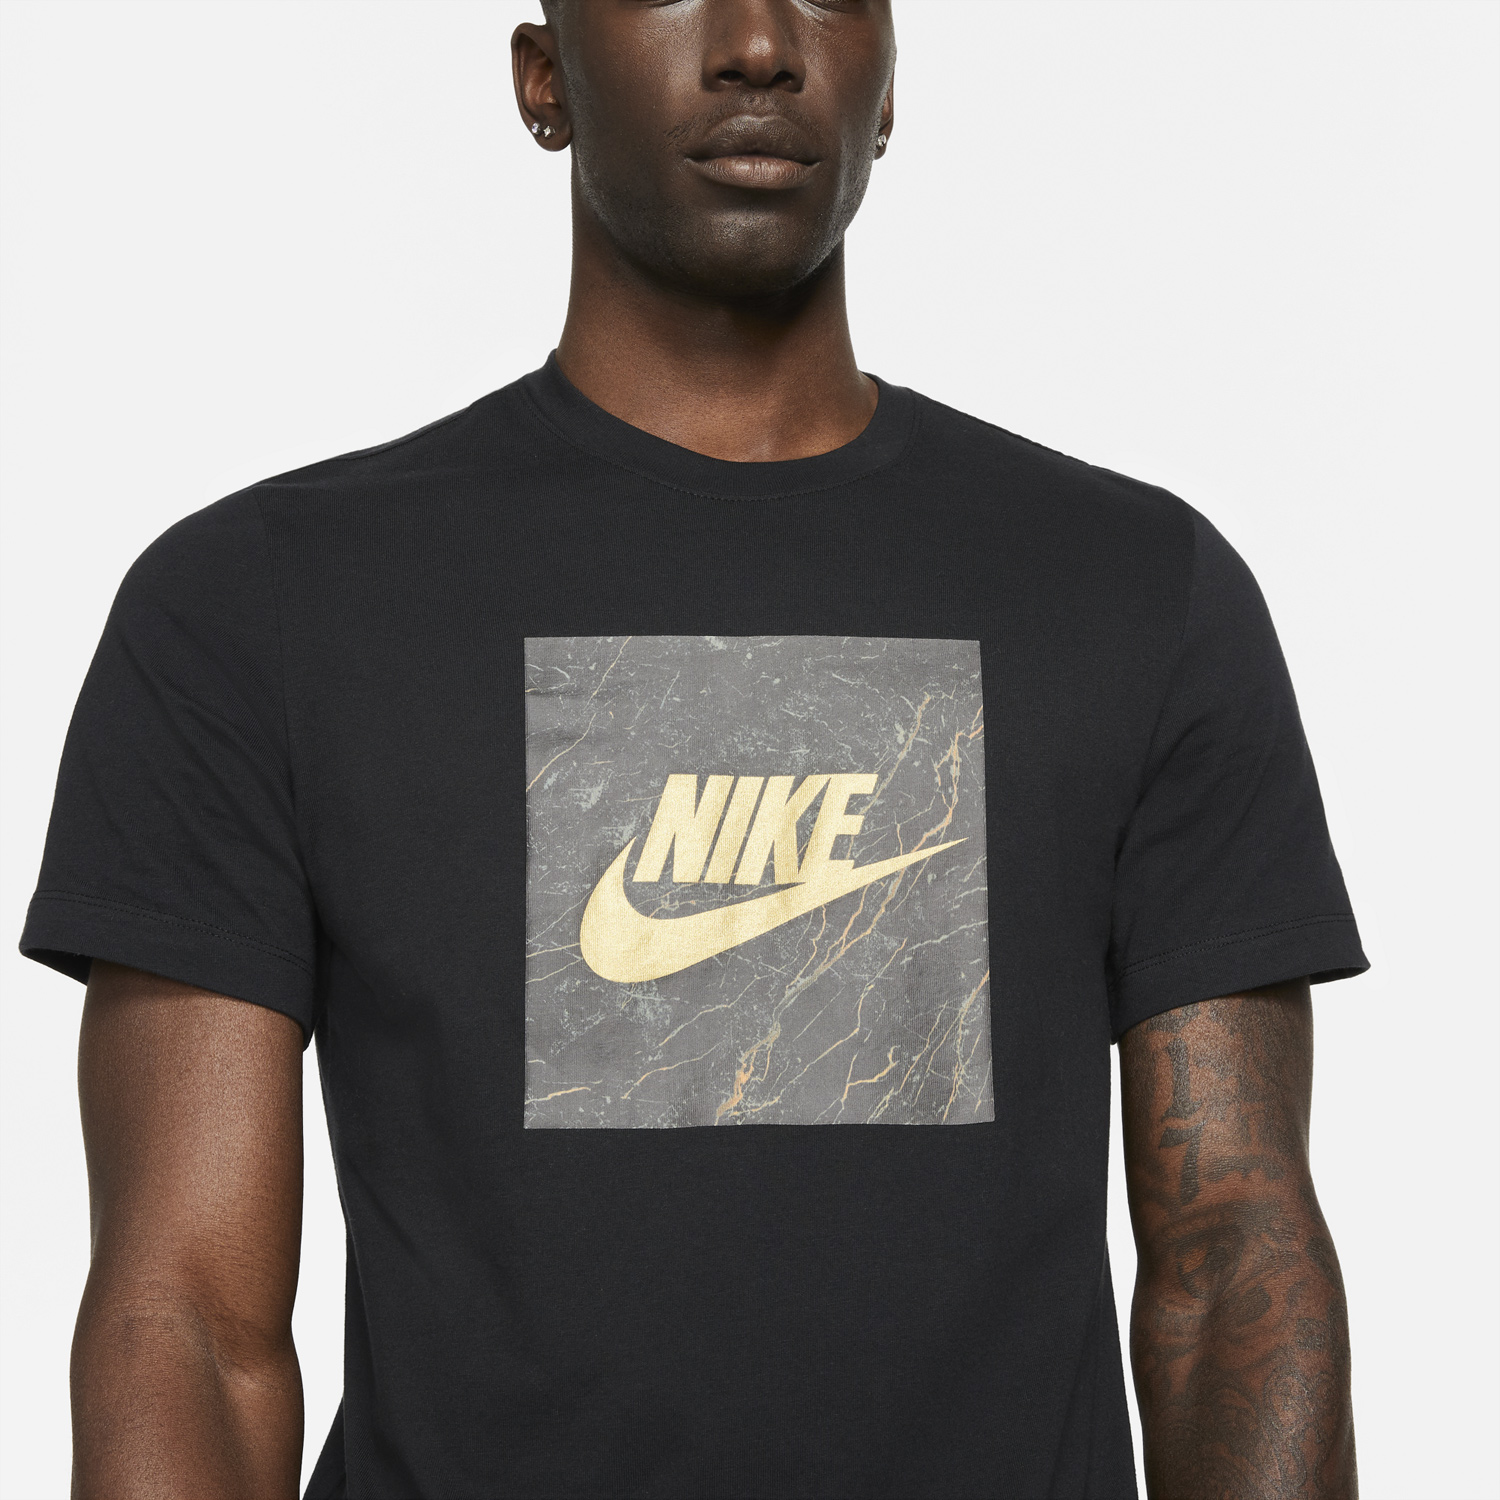 nike-black-metallic-gold-t-shirt-1